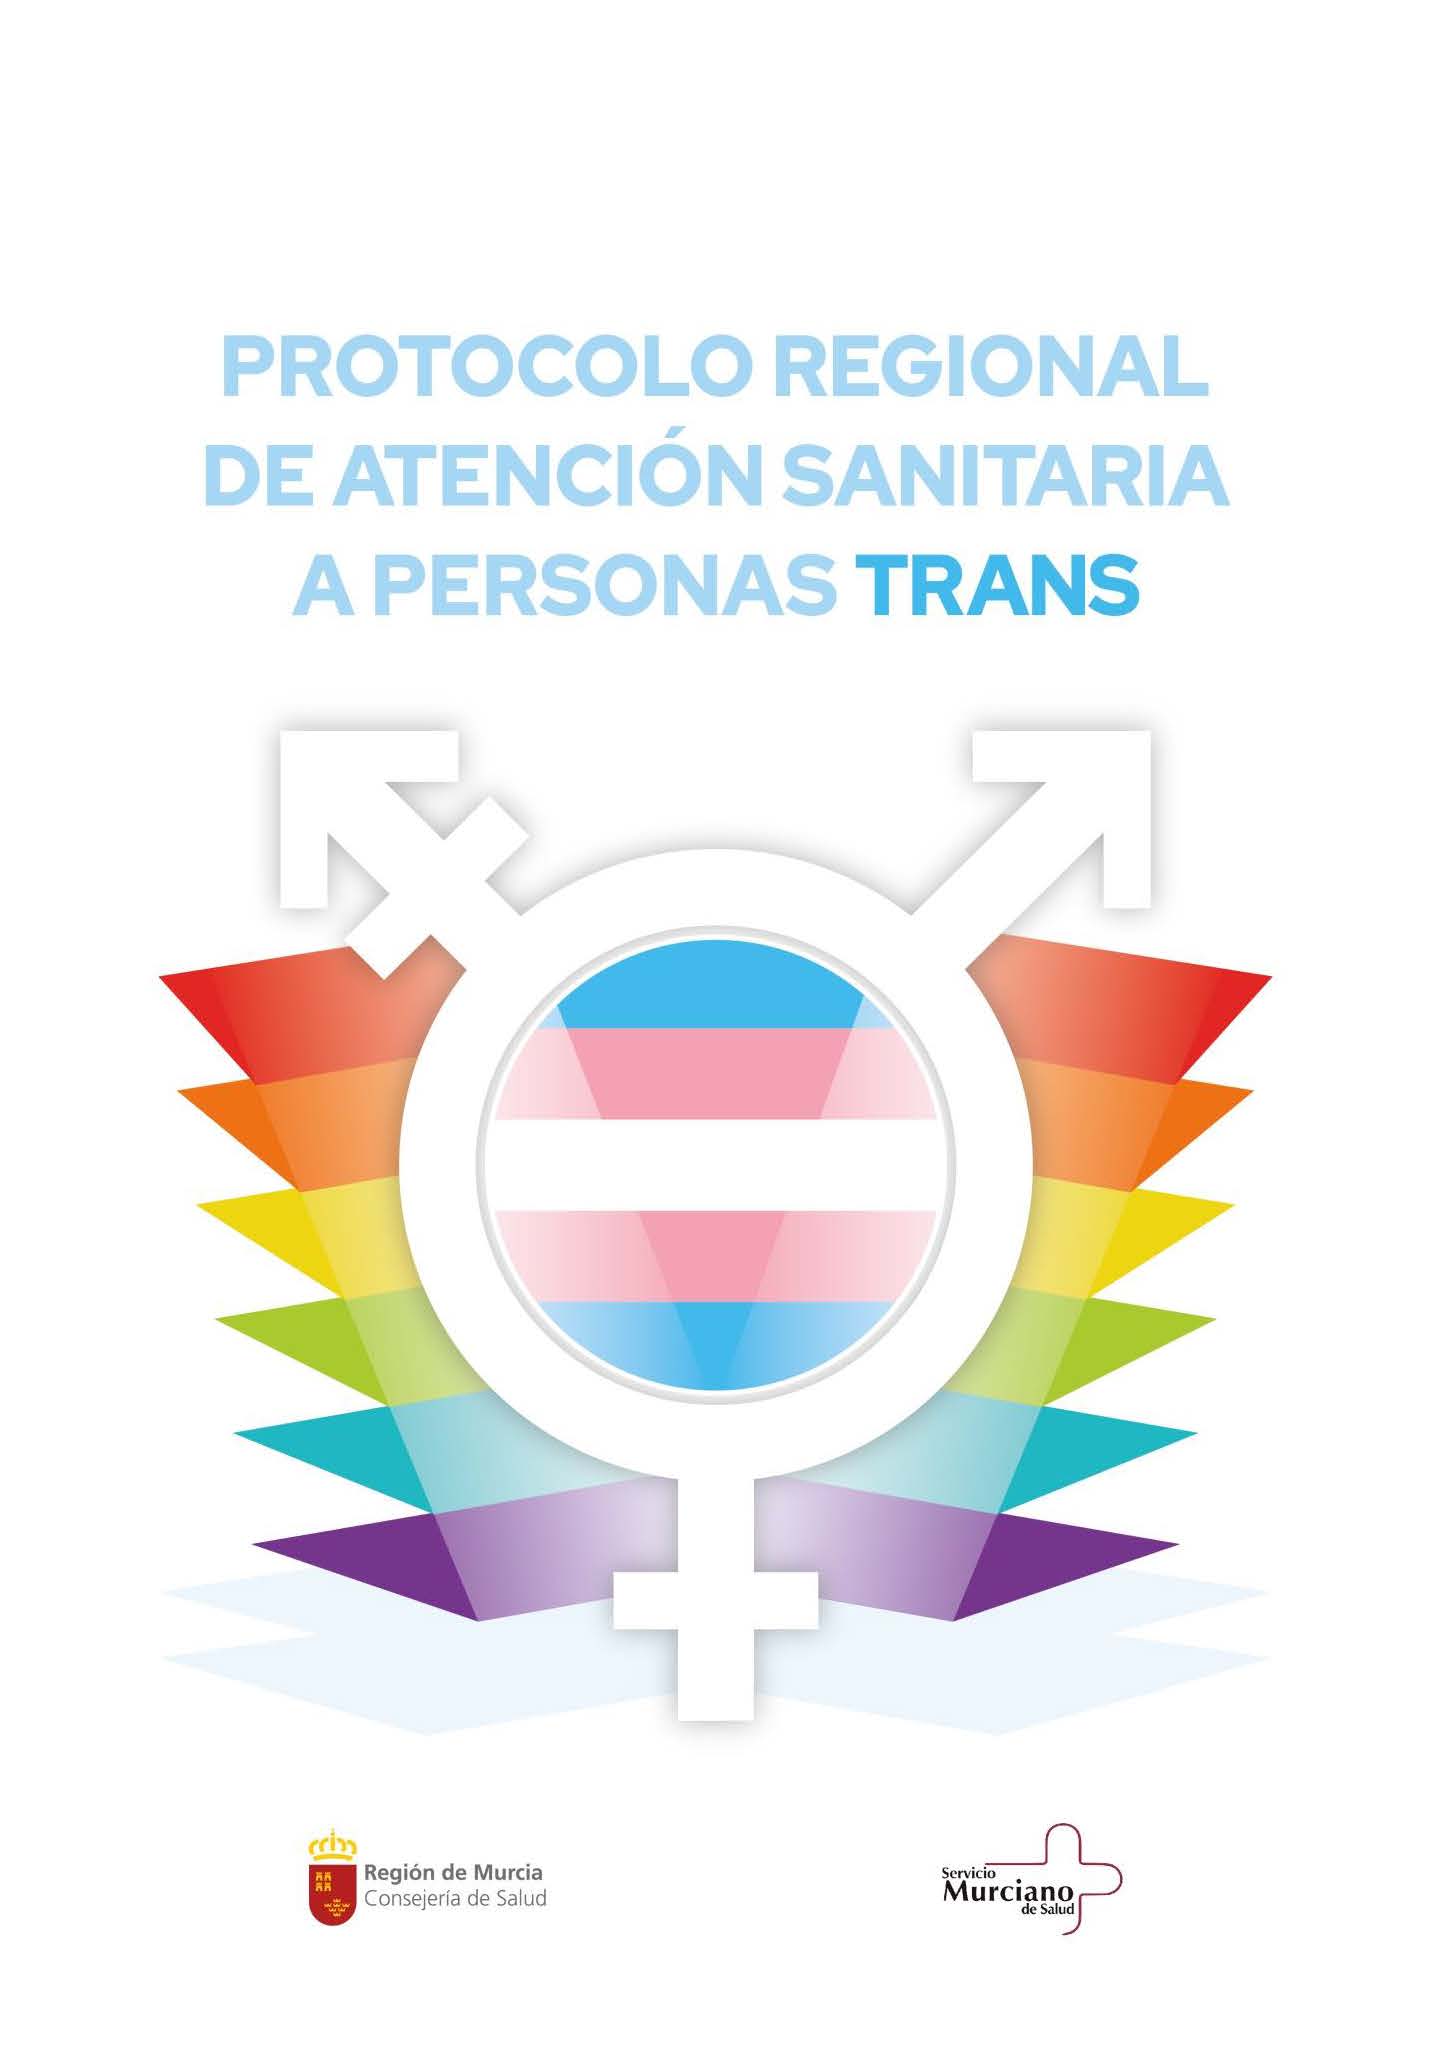 foto: Protocolo Regional de Atencion Sanitaria a Personas Trans